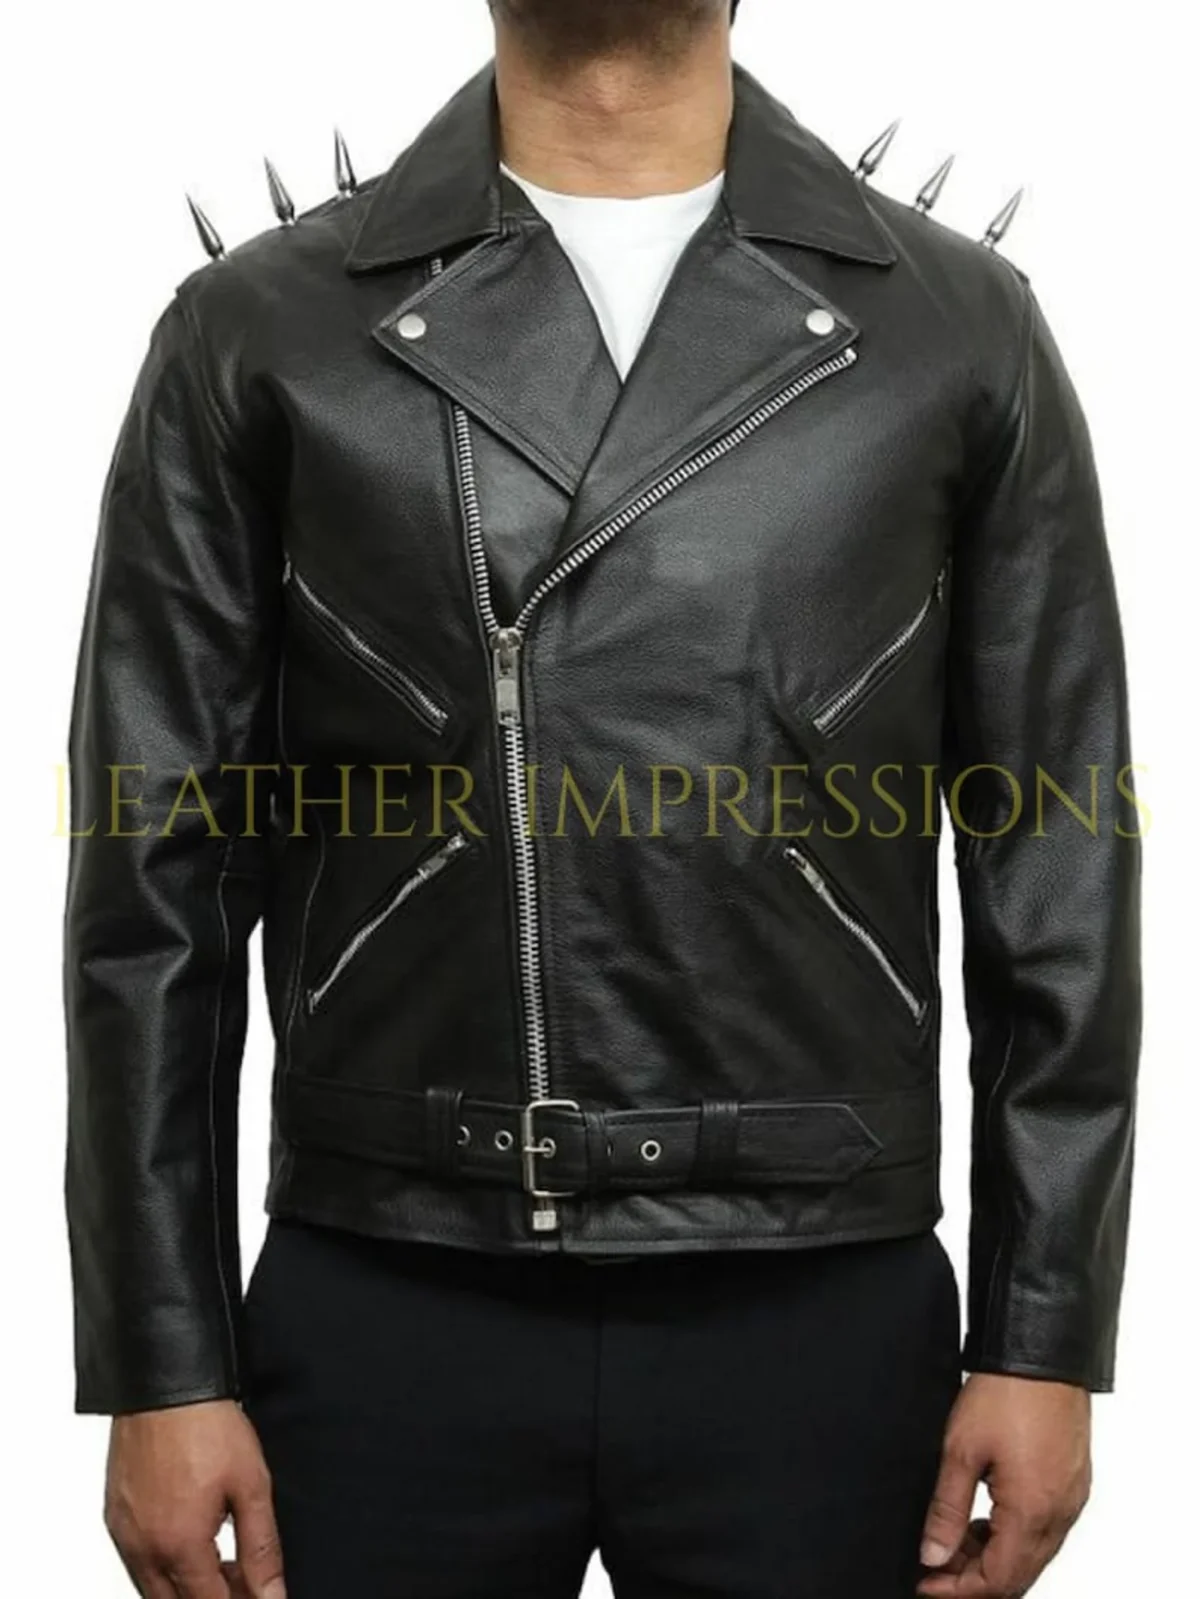 Bondage Genuine Leather Jacket, leather jacket for men, leather motorcycle jacket